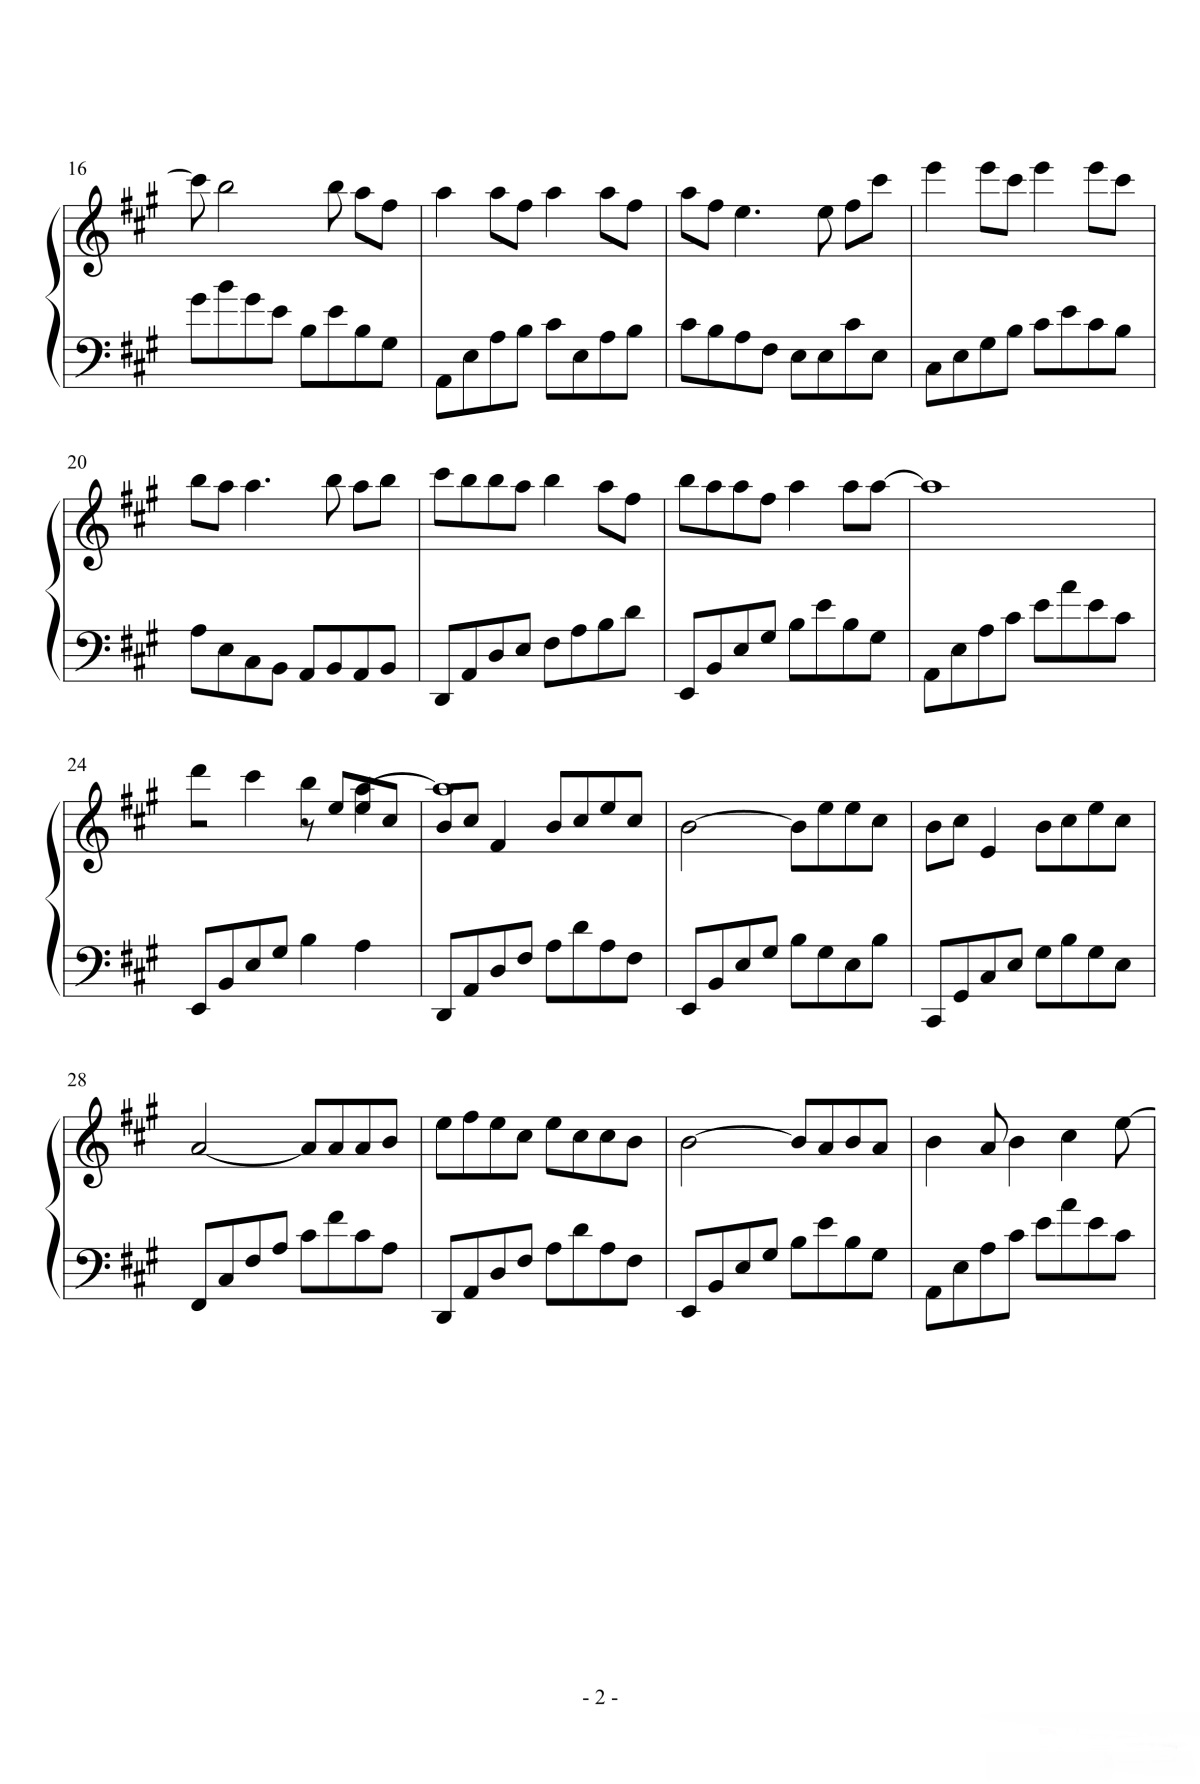 【青花瓷】的钢琴谱简谱 - 周杰伦